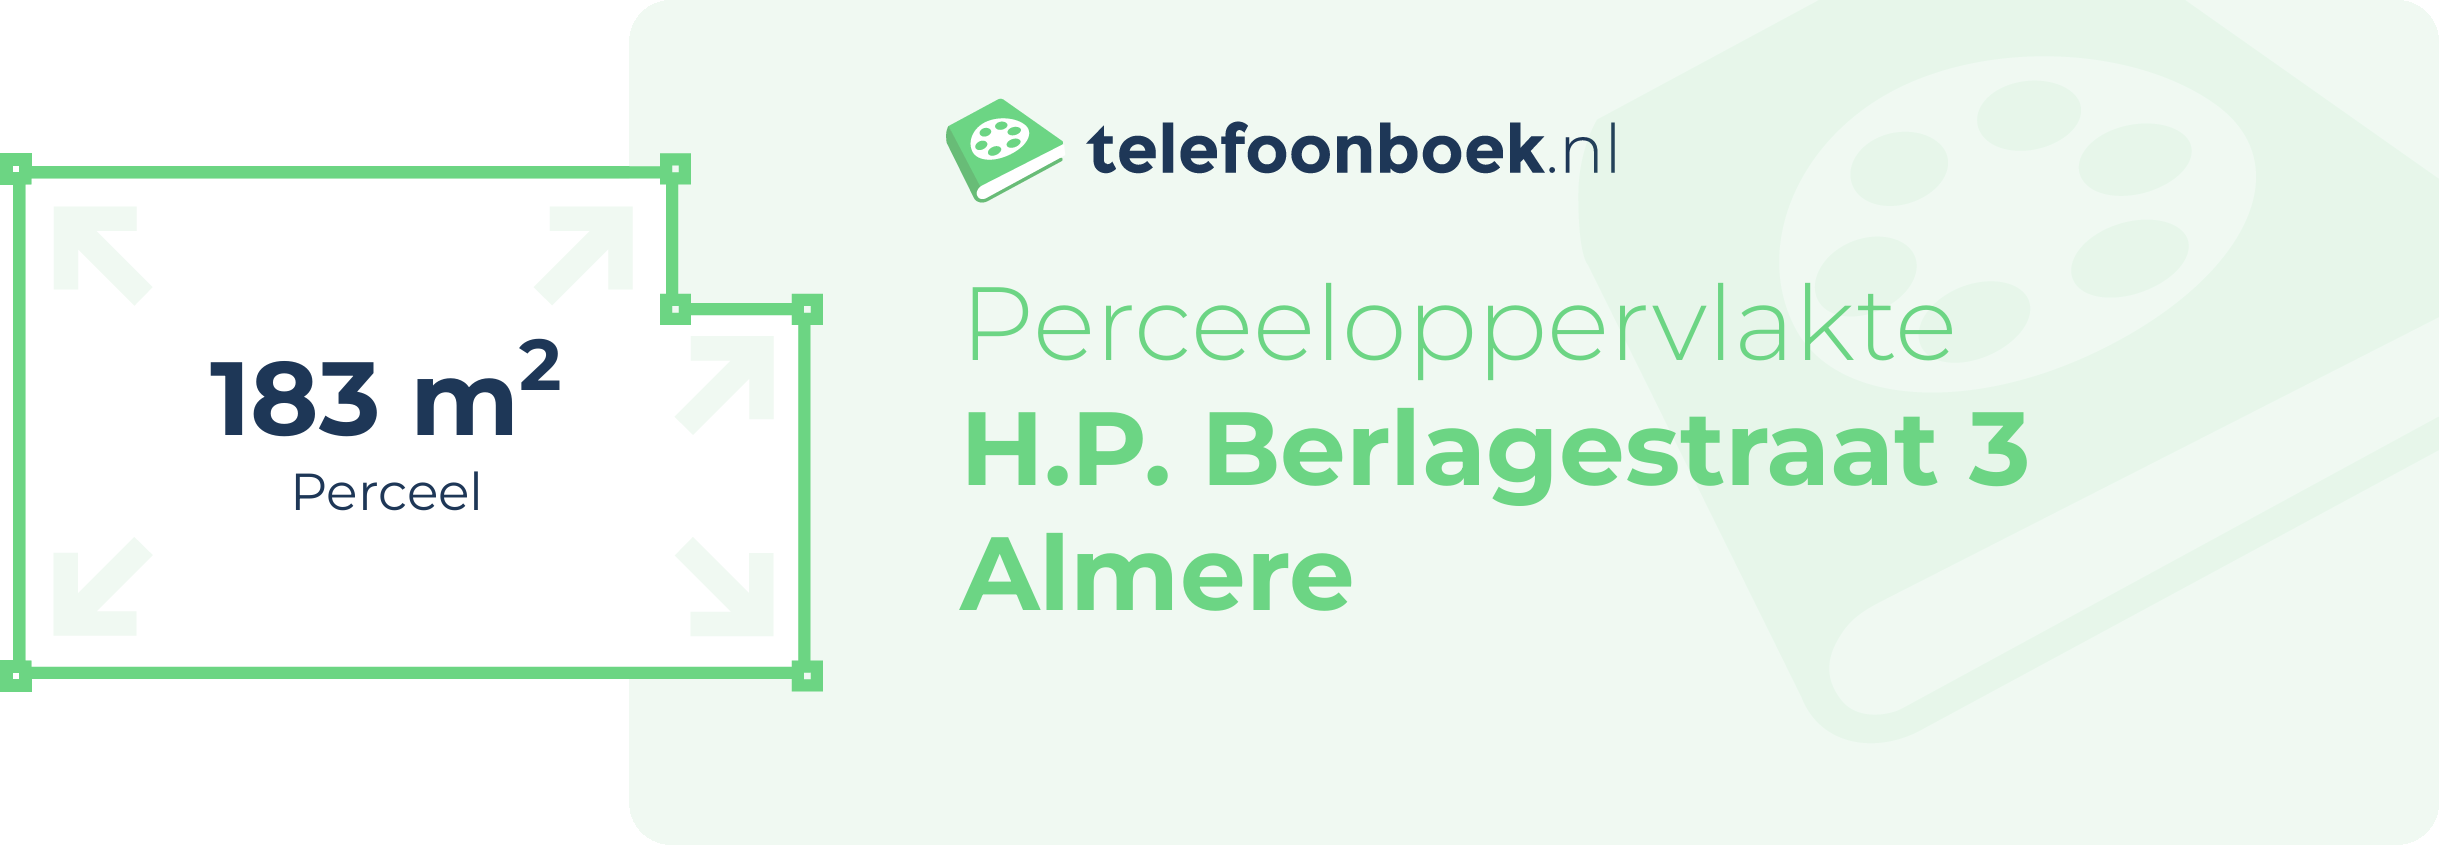 Perceeloppervlakte H.P. Berlagestraat 3 Almere